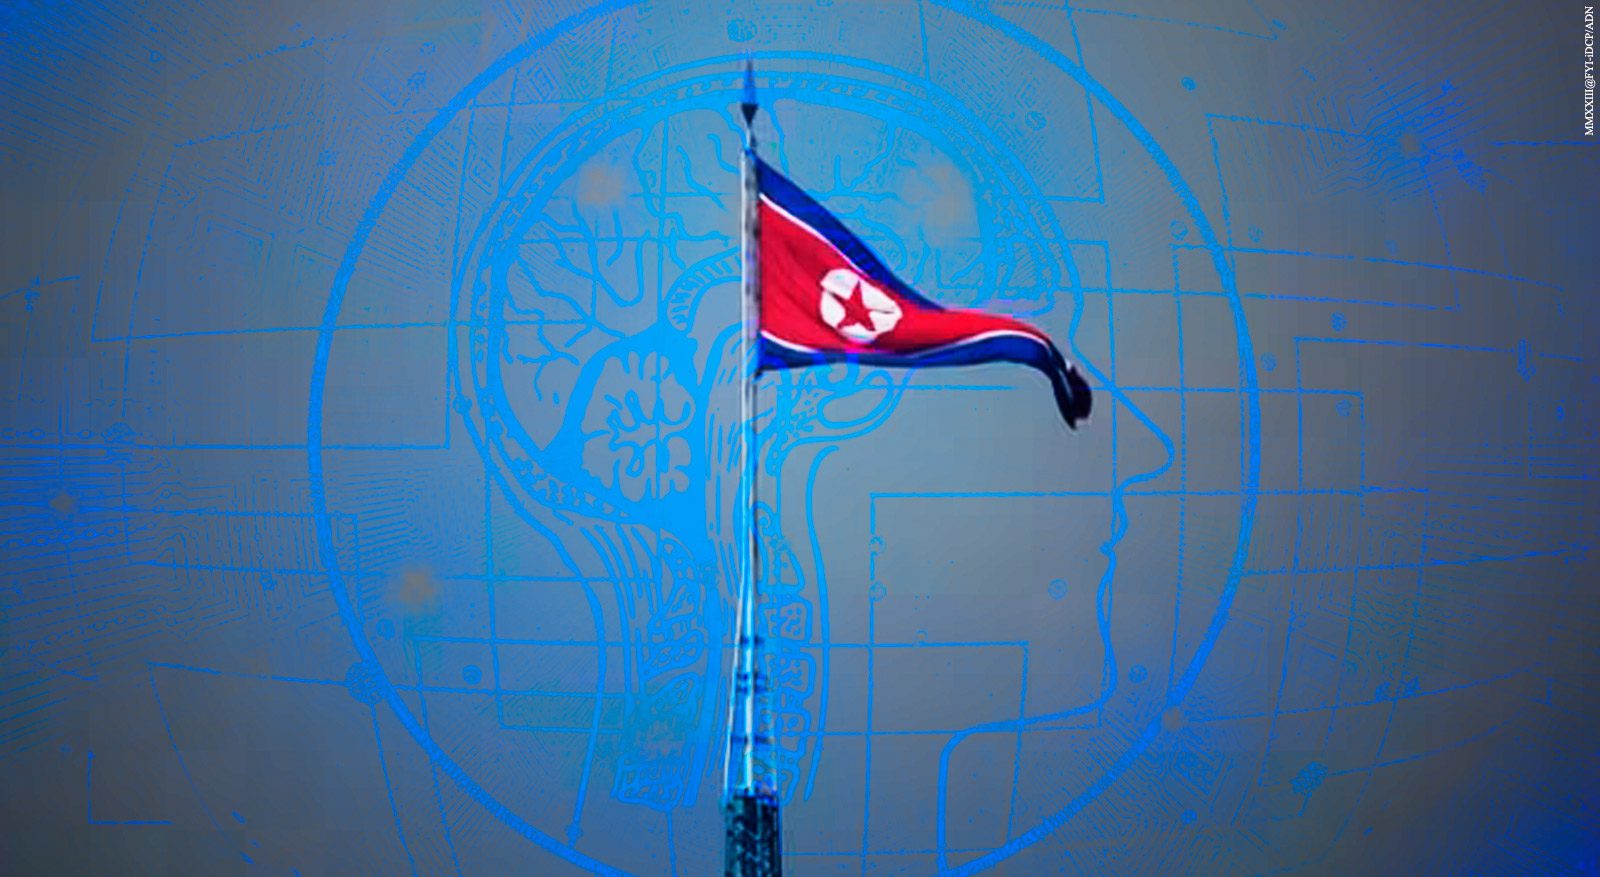 North Korea's AI development raises sanctions concerns, says report